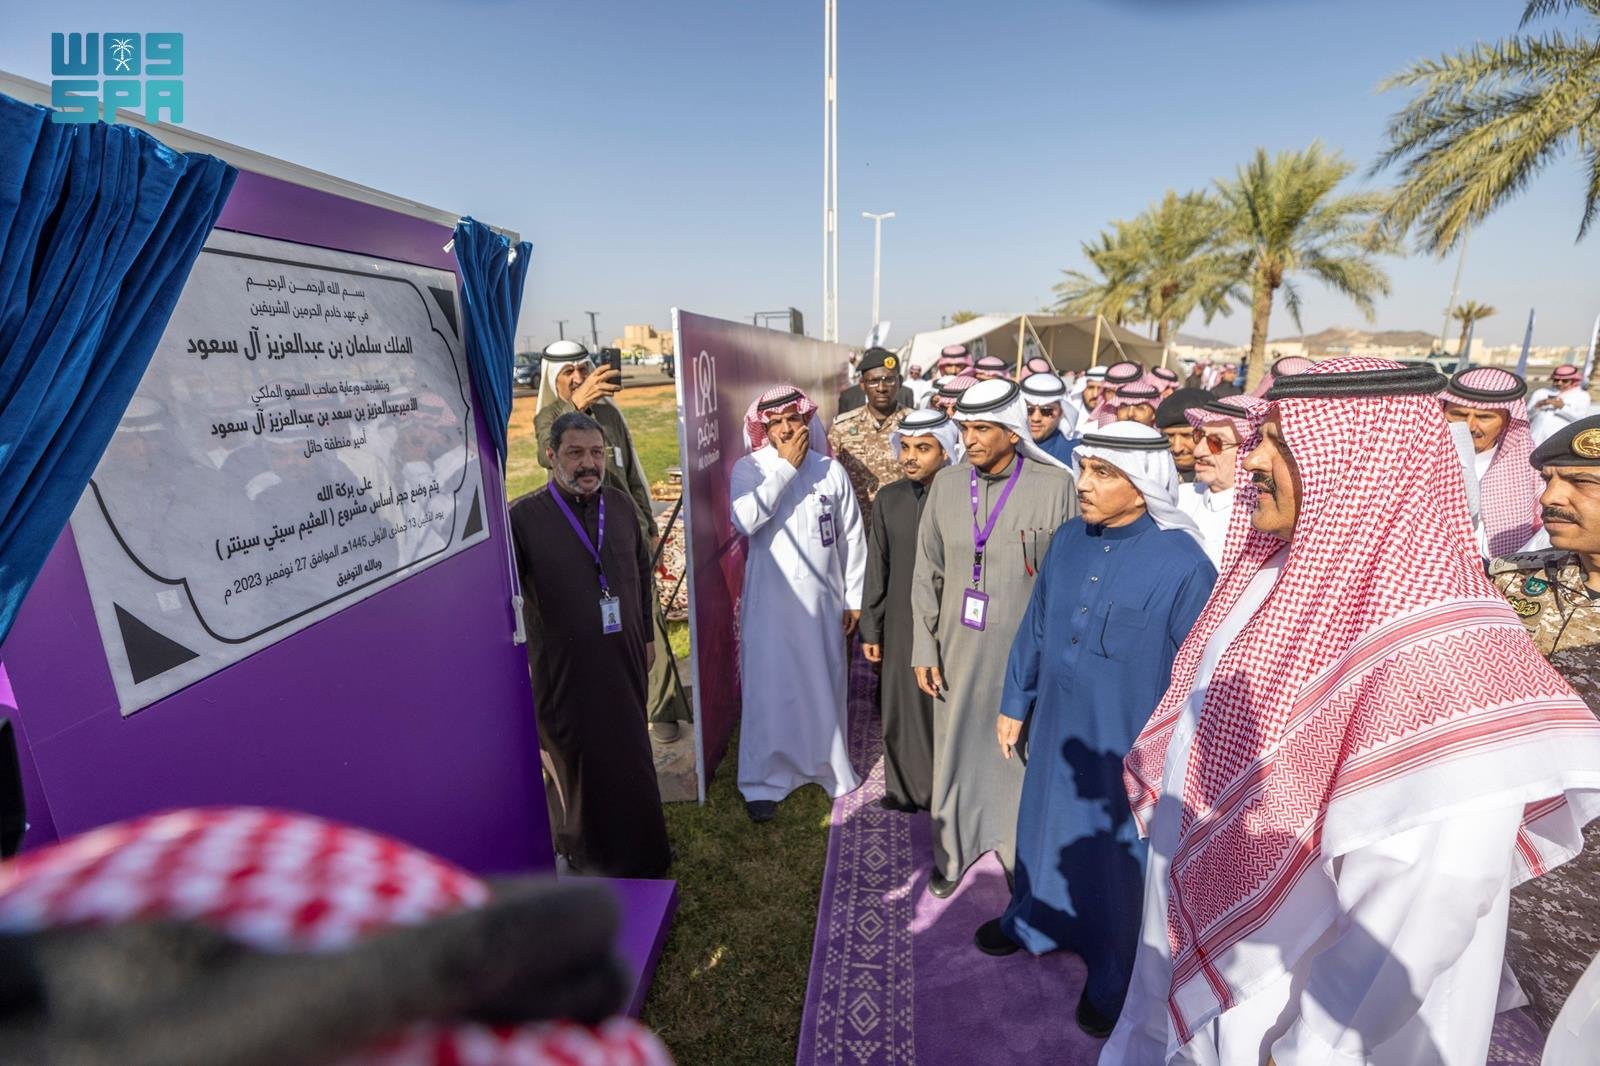 الأمير عبدالعزيز بن سعد يضع حجر الأساس لمشروع مركز أجا الدولي للمعارض والمؤتمرات ومشروع العثيم سيتي سنتر